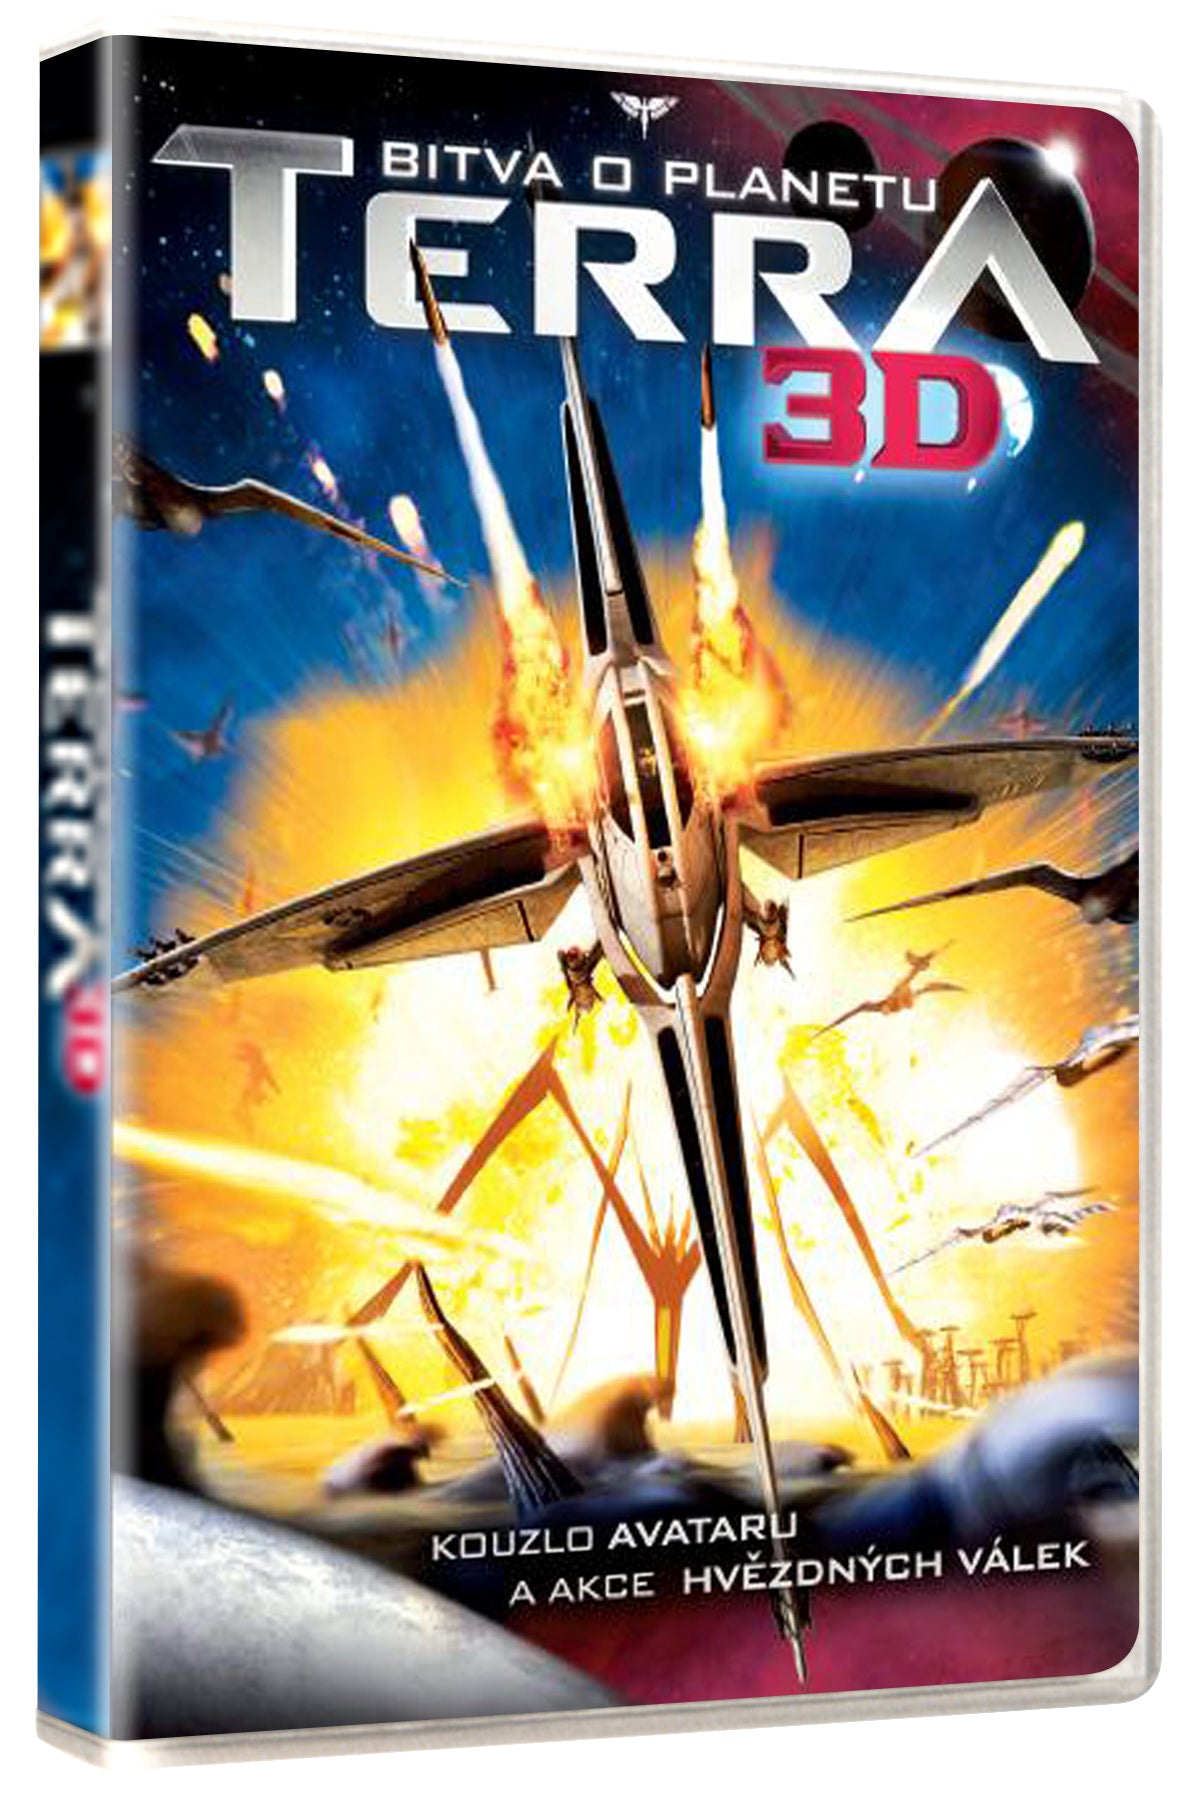 Bitva o planetu Terra 3D DVD / Battle for Terra